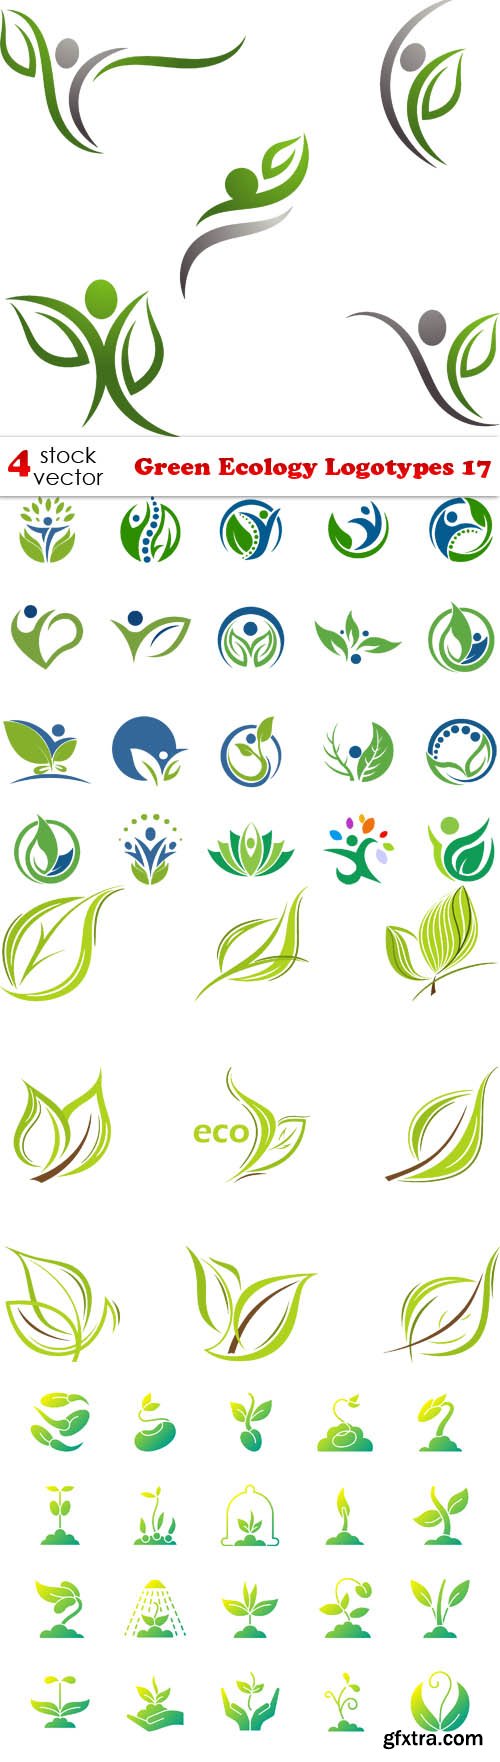 Vectors - Green Ecology Logotypes 17